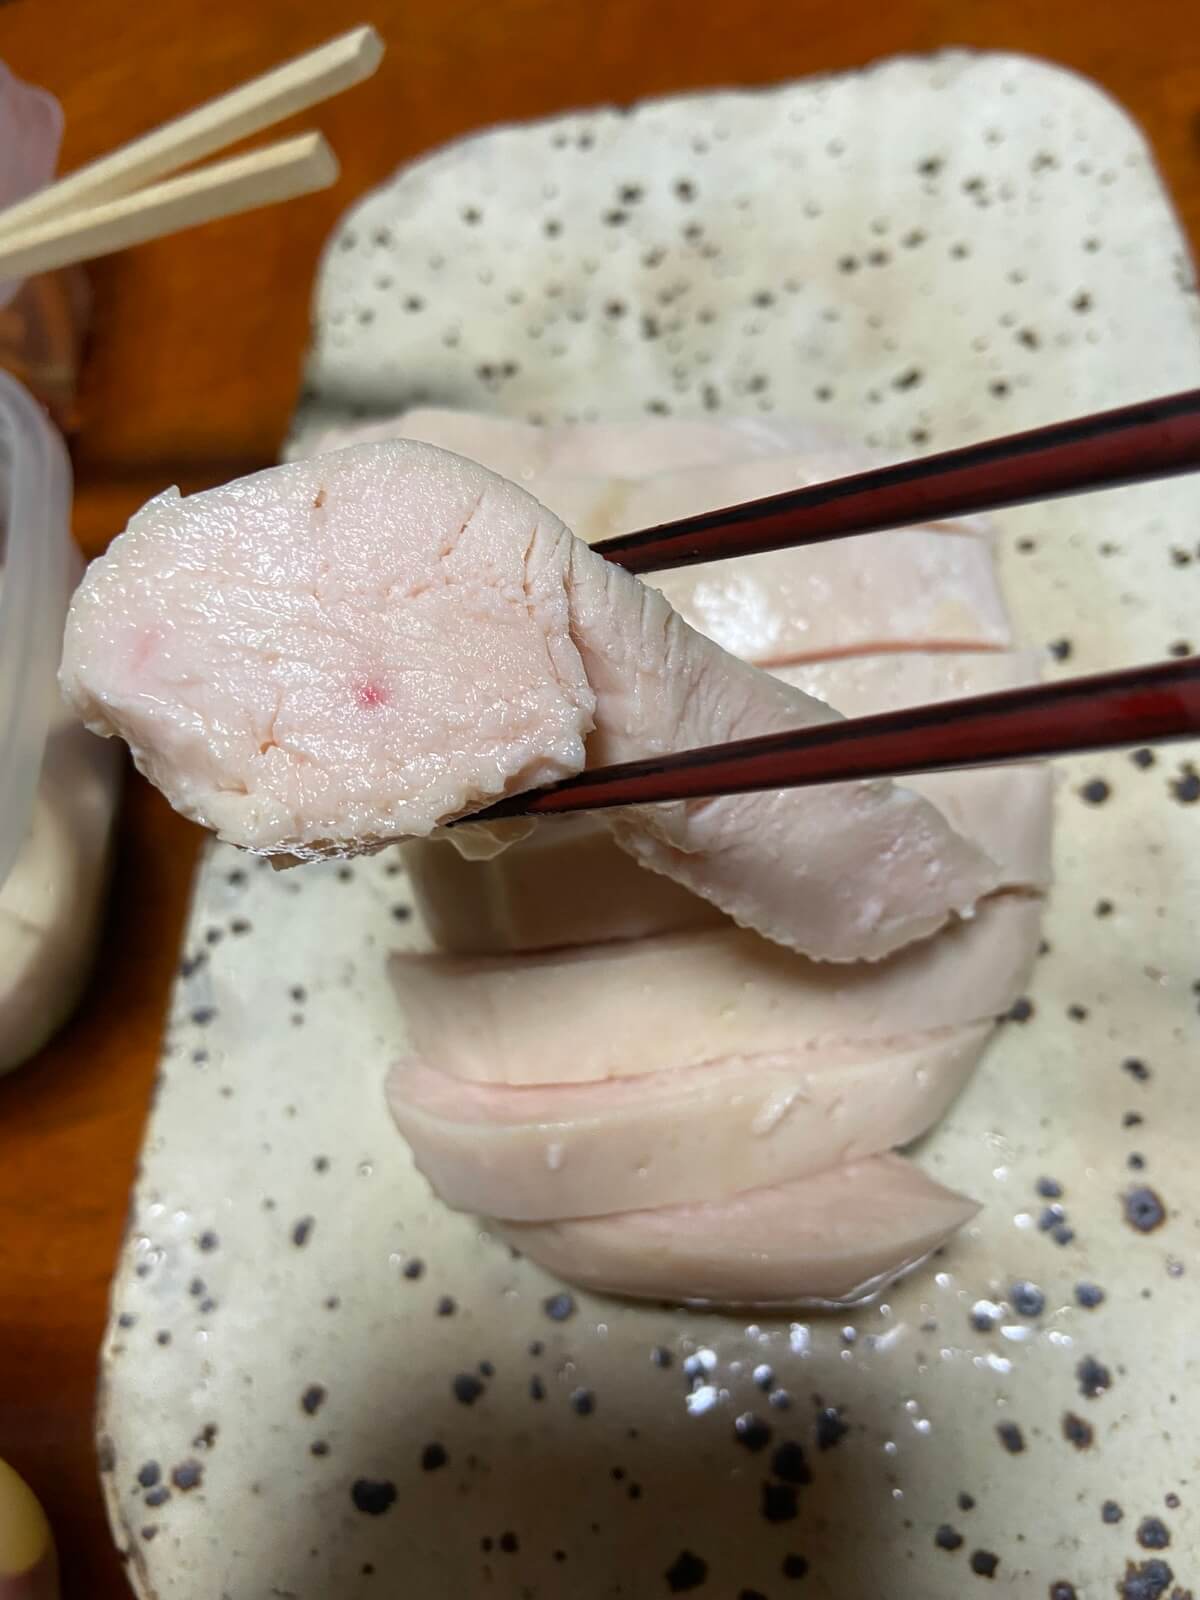 BONIQで調理した鶏むね肉を実食